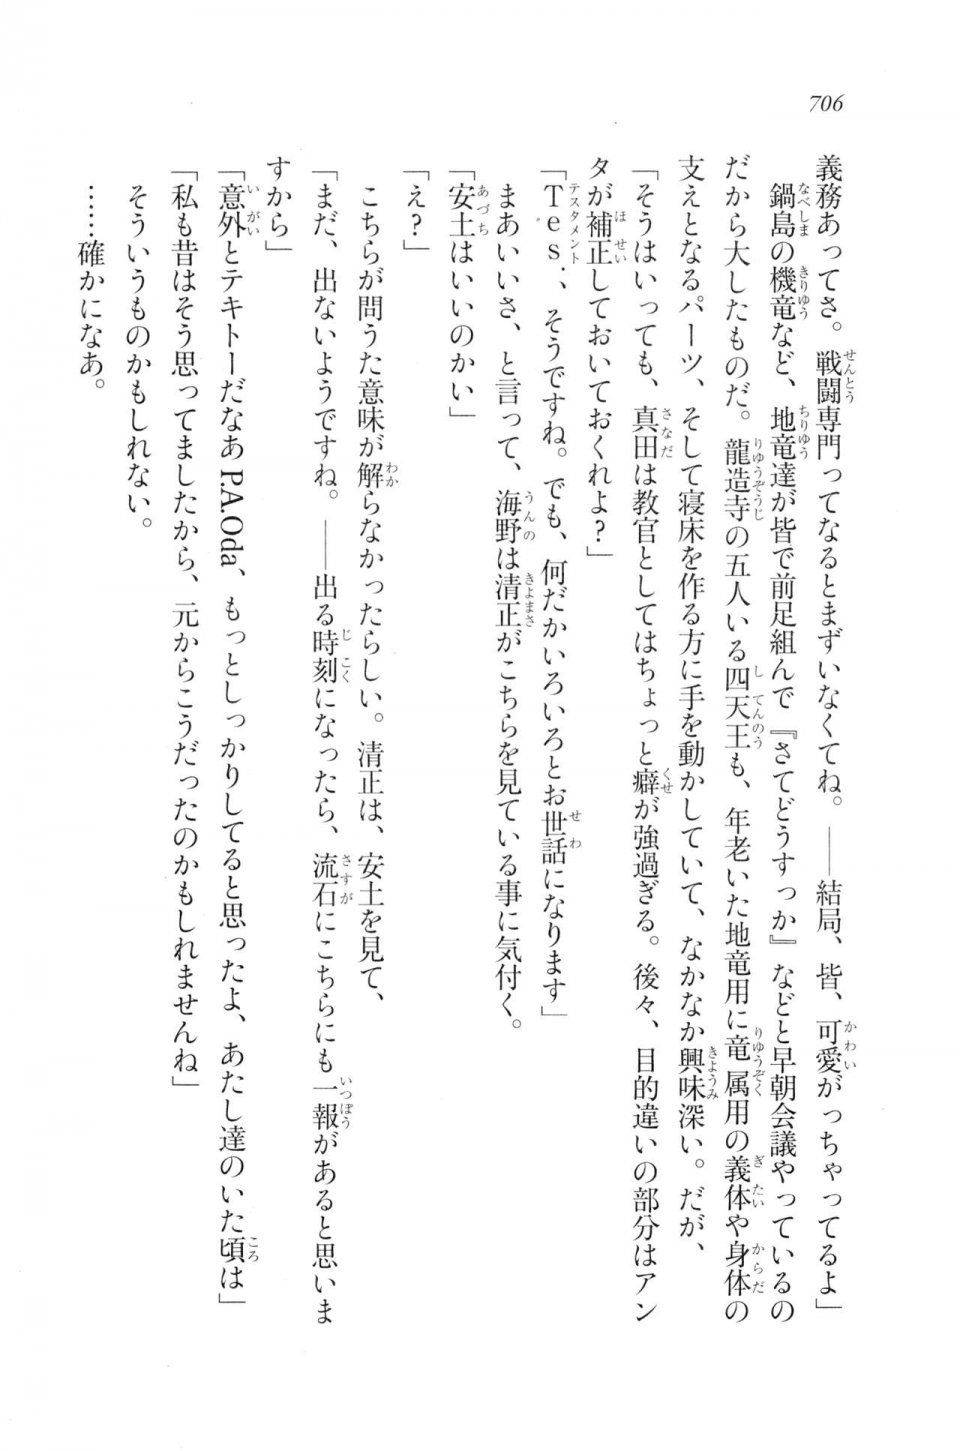 Kyoukai Senjou no Horizon LN Vol 20(8B) - Photo #706